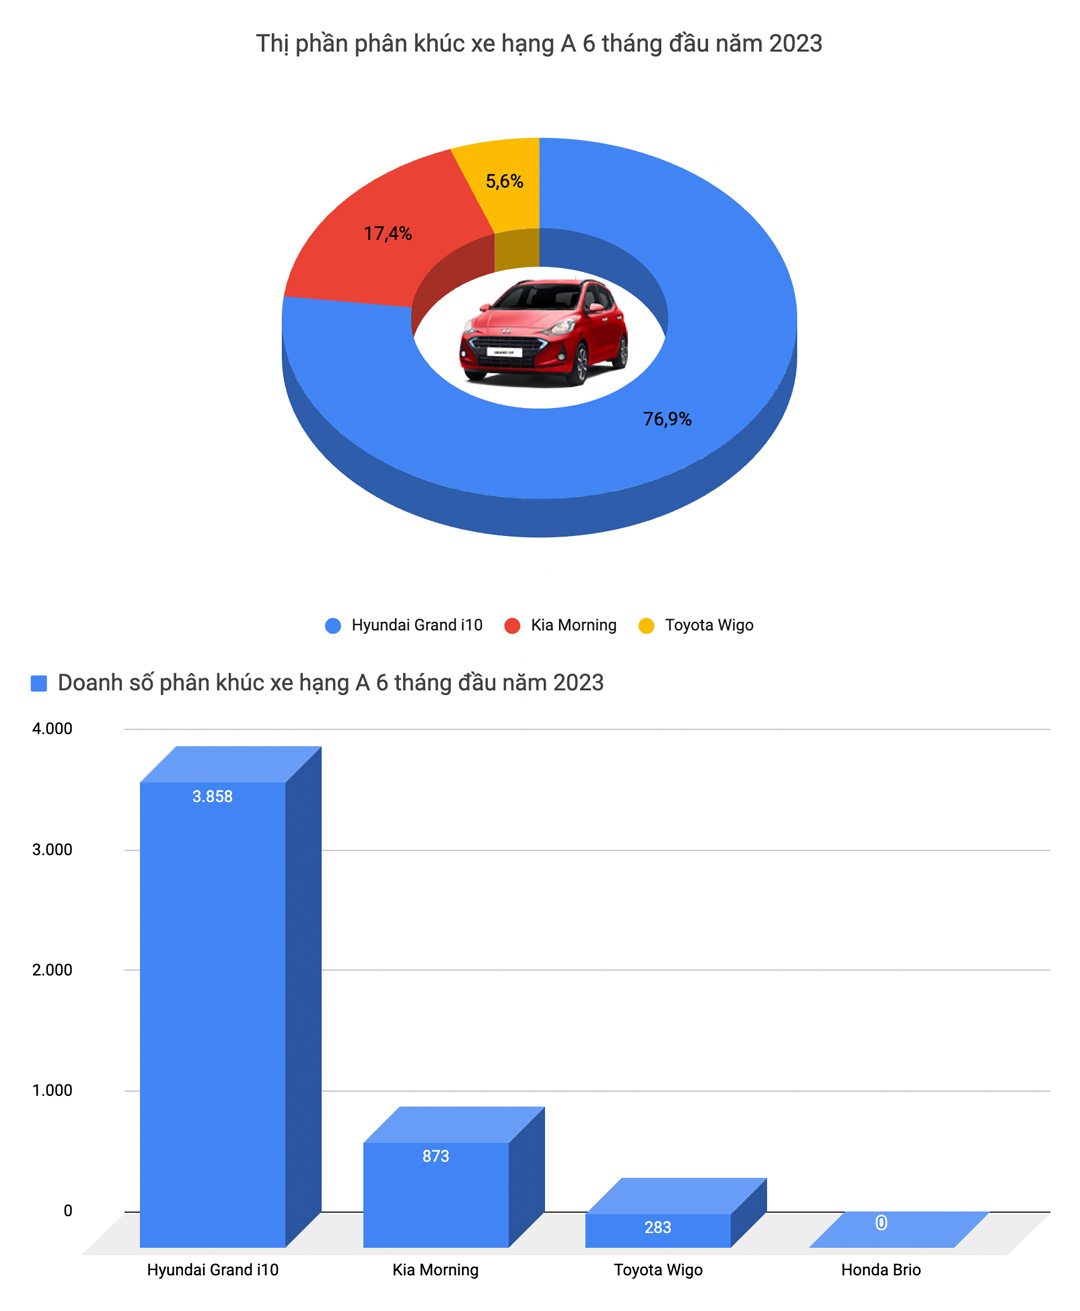 Mitsubishi Xpander bán chạy nhất Việt Nam và 9 ông vua doanh số từng phân khúc nửa đầu 2023 - Ảnh 2.